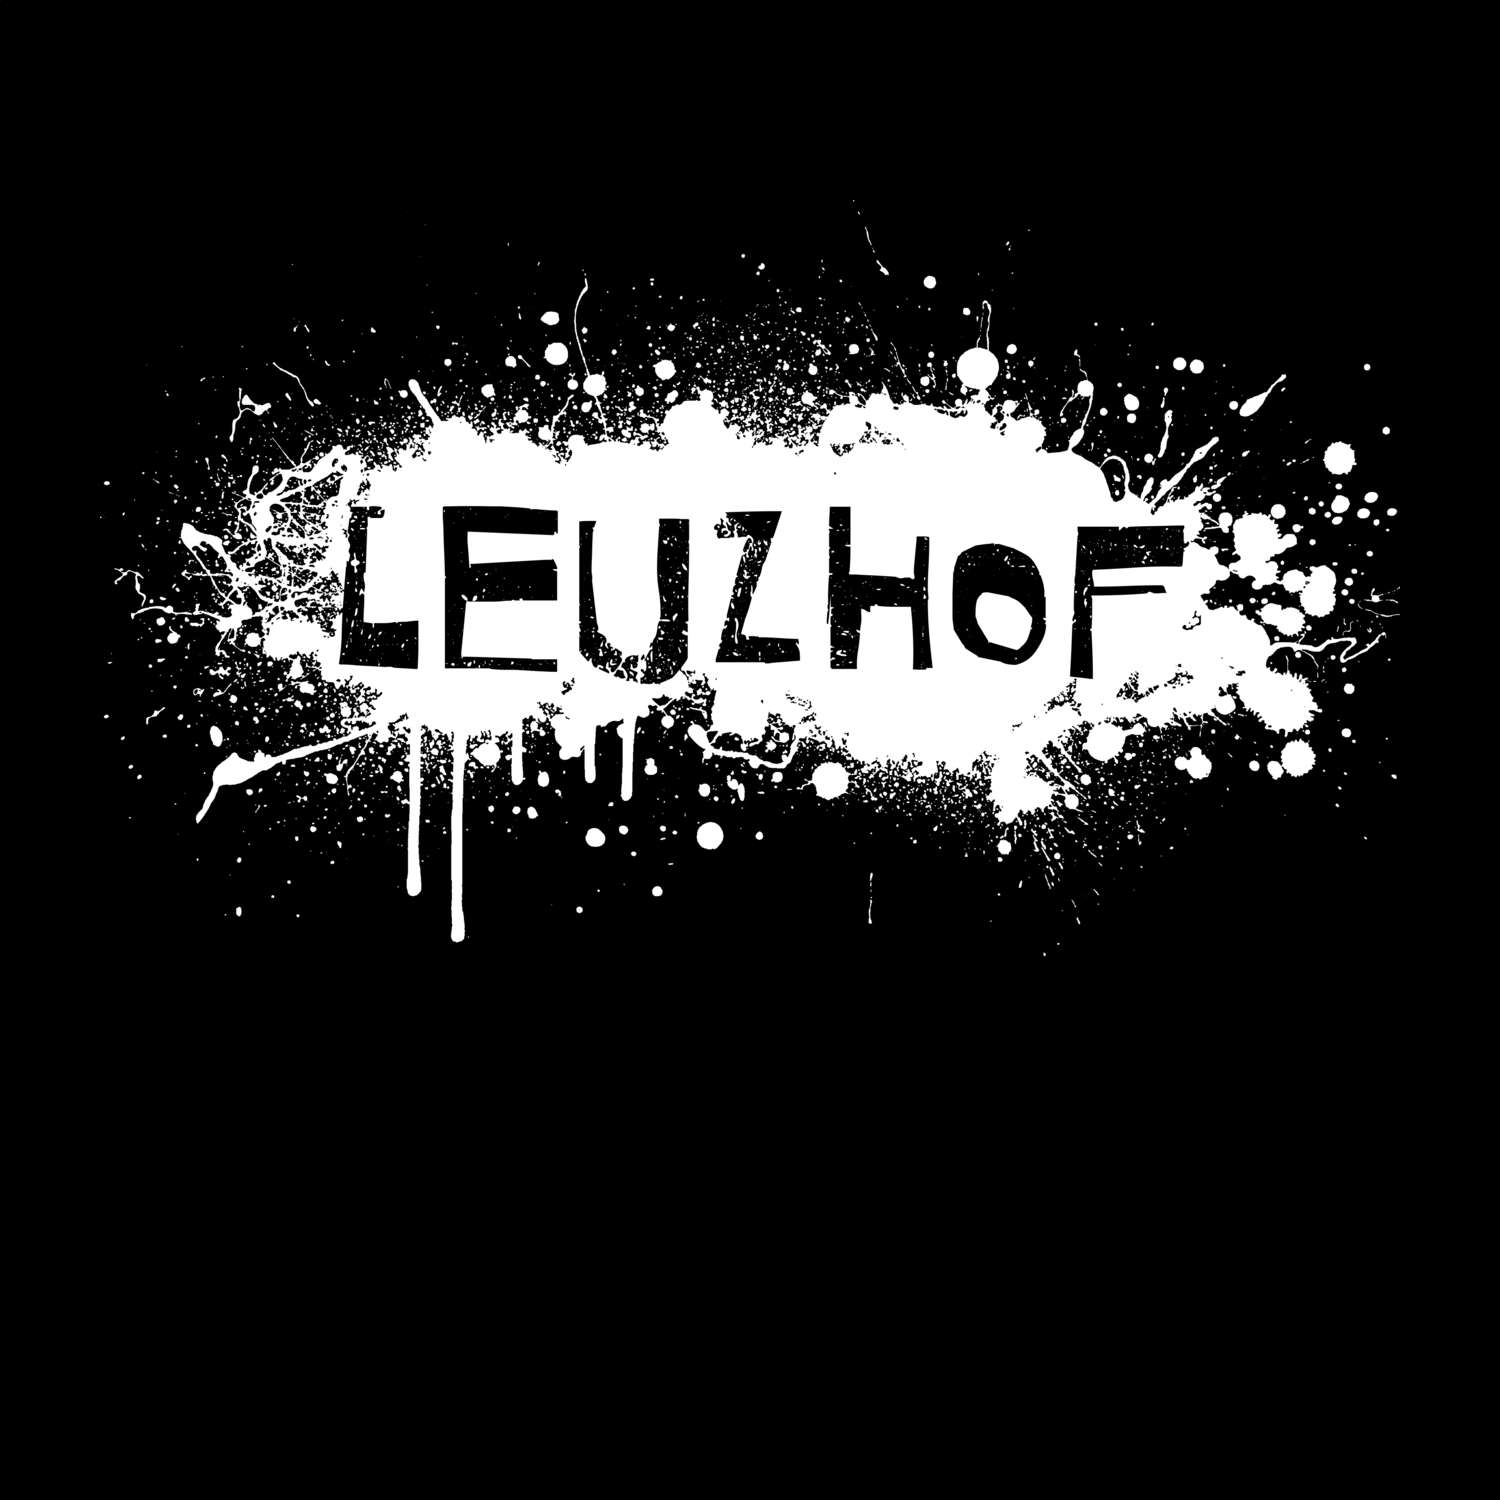 Leuzhof T-Shirt »Paint Splash Punk«